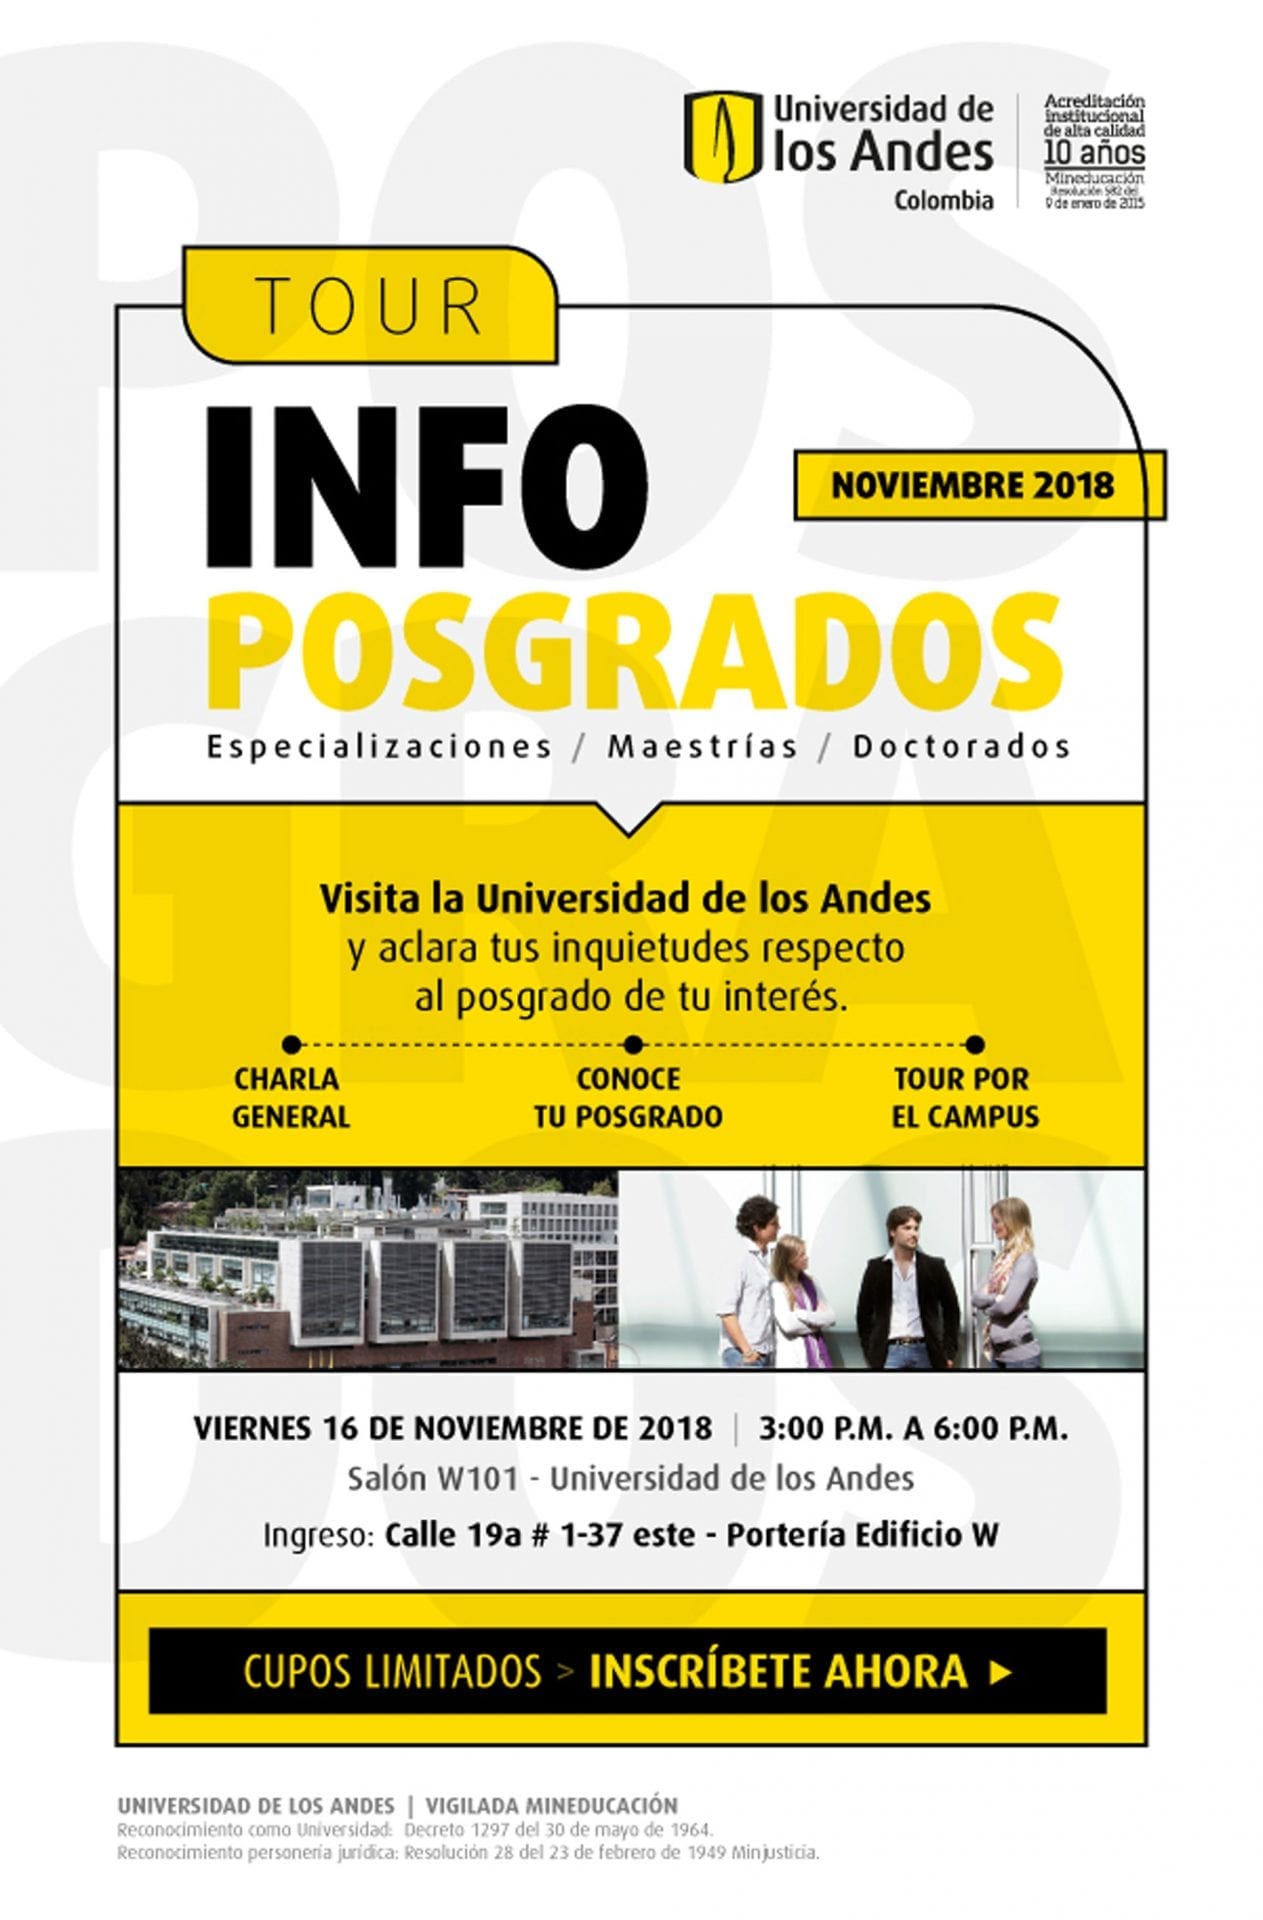 Visite la Universidad de los Andes y aclare sus inquietudes respecto al programa de posgrado de su interés. 16 de noviembre, de 3:00 p.m. a 6:00 p.m.